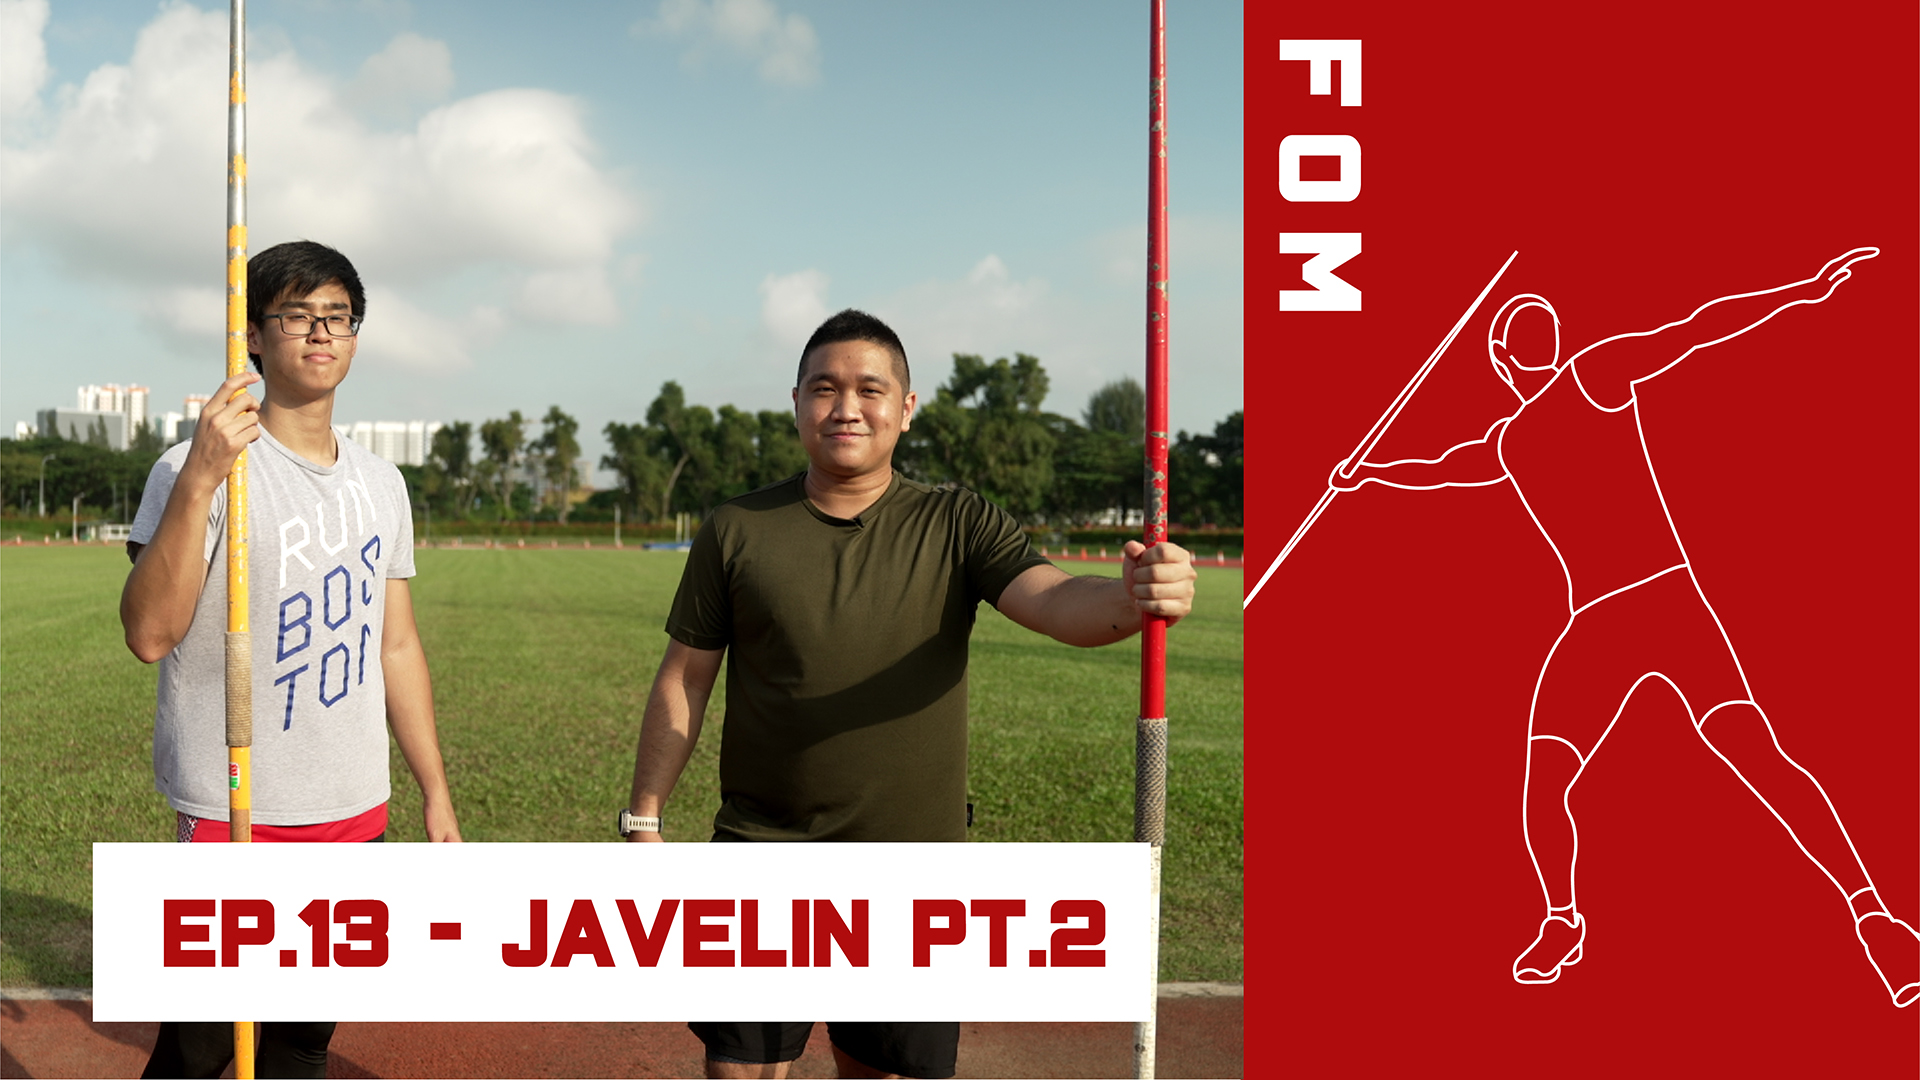 Ep 13 - Javelin pt. 2